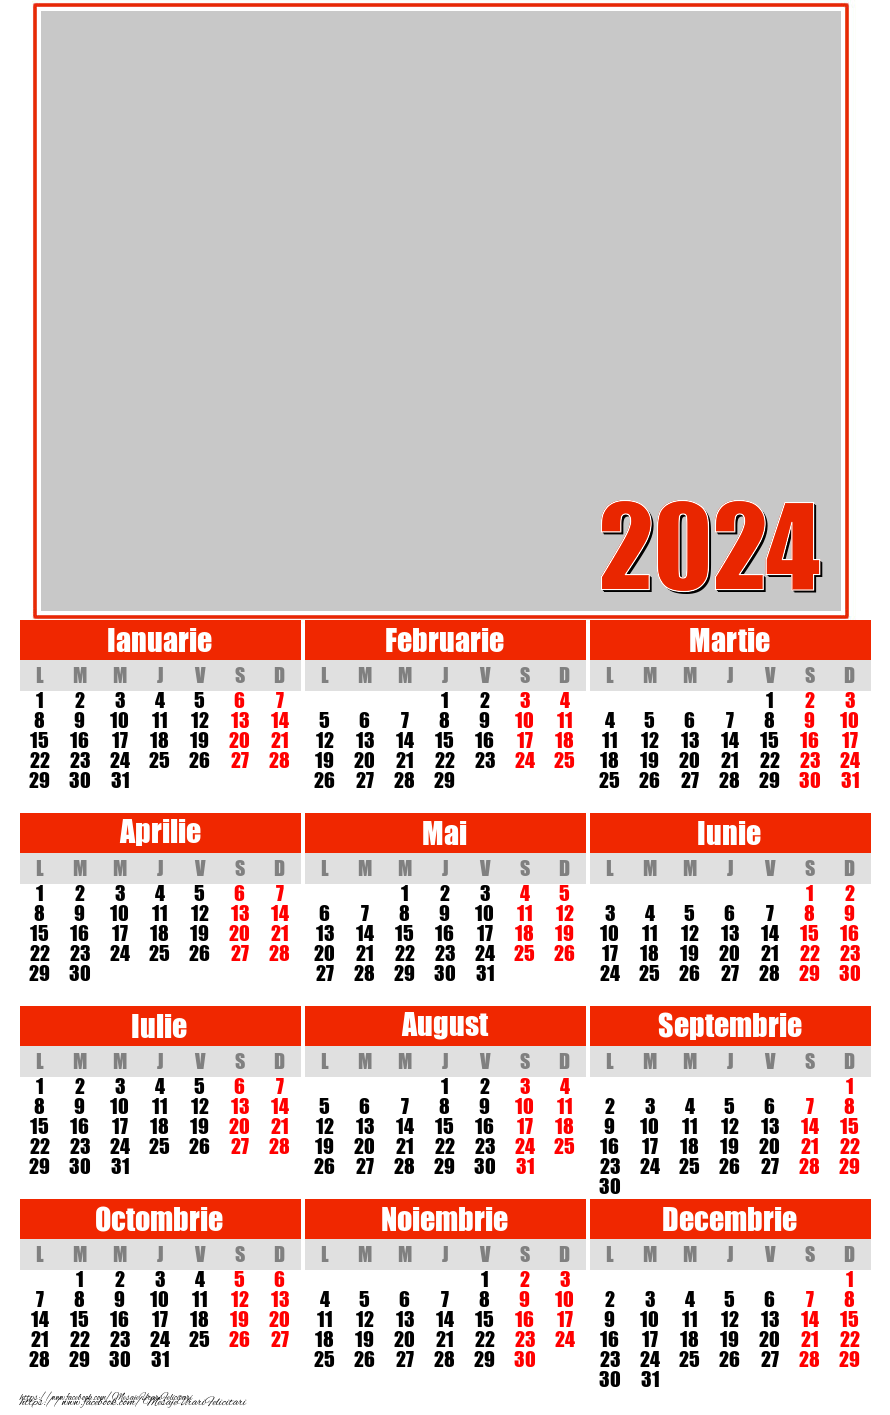 Felicitari personalizate cu calendare - Calendar 2024 cu poza ta - clasic rosu - Model 0033